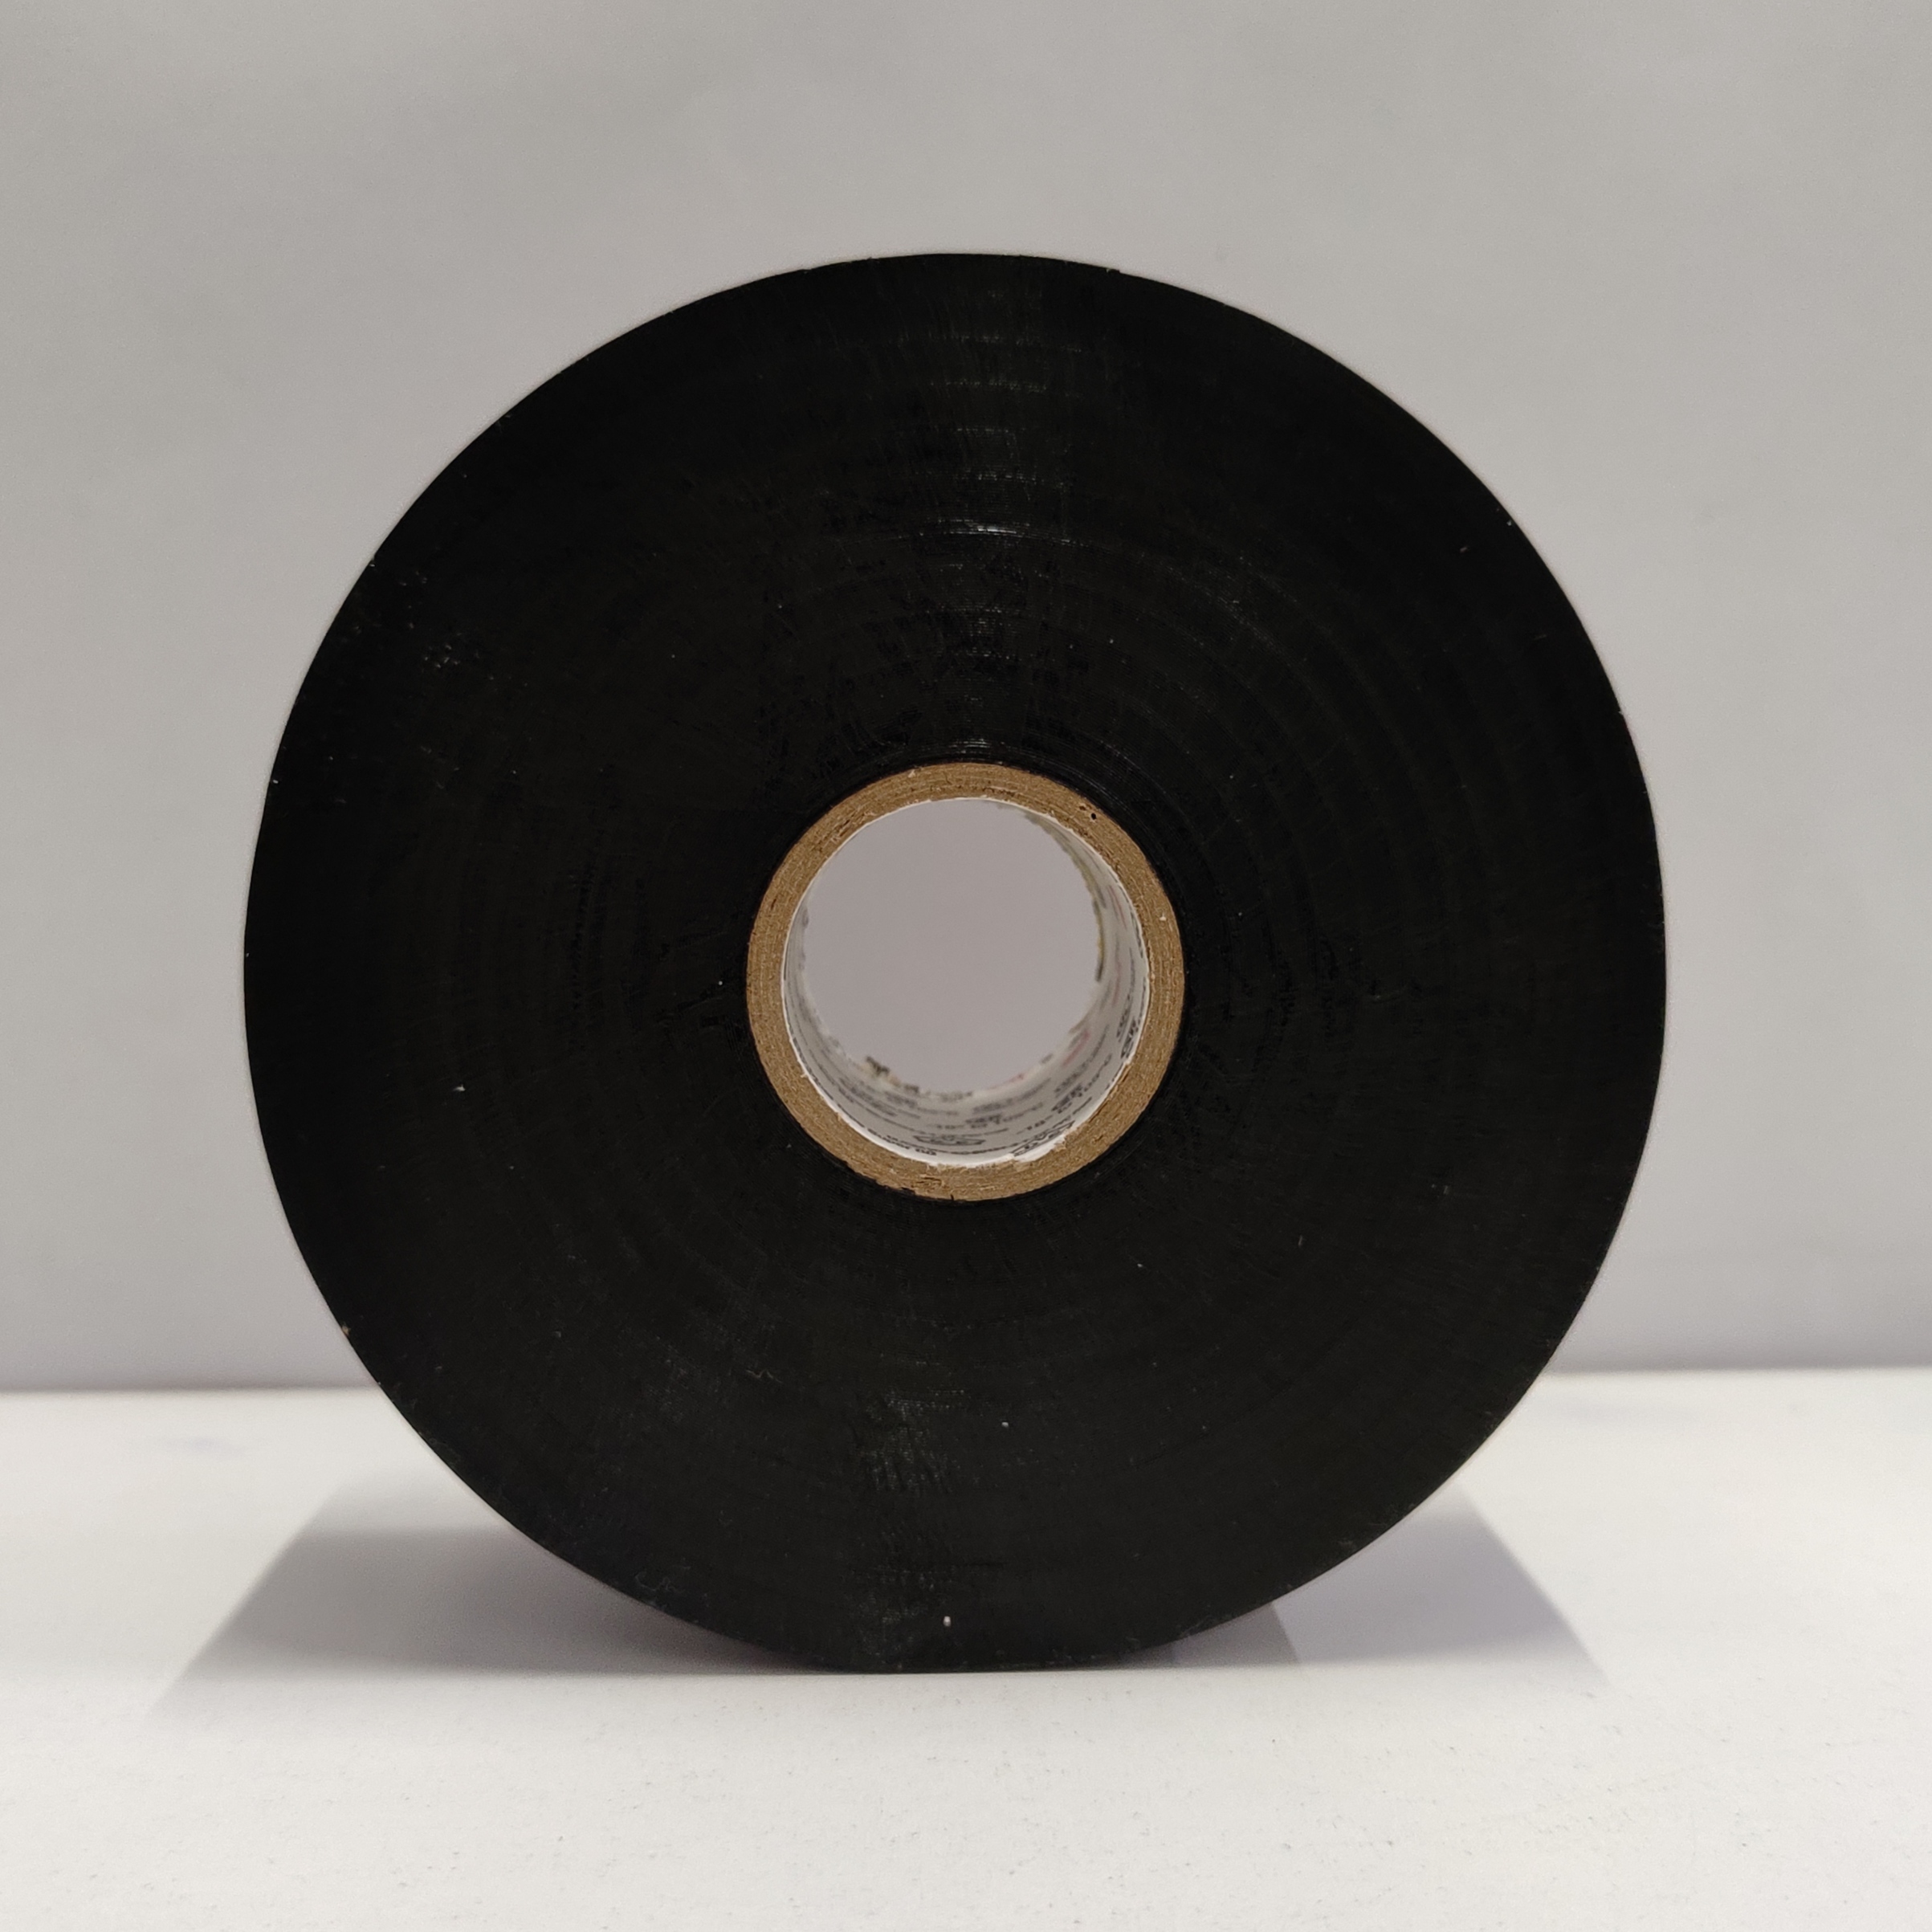 3m Scotch Super 88 Electrical Vinyl Tape 50.8mm X 32.9m